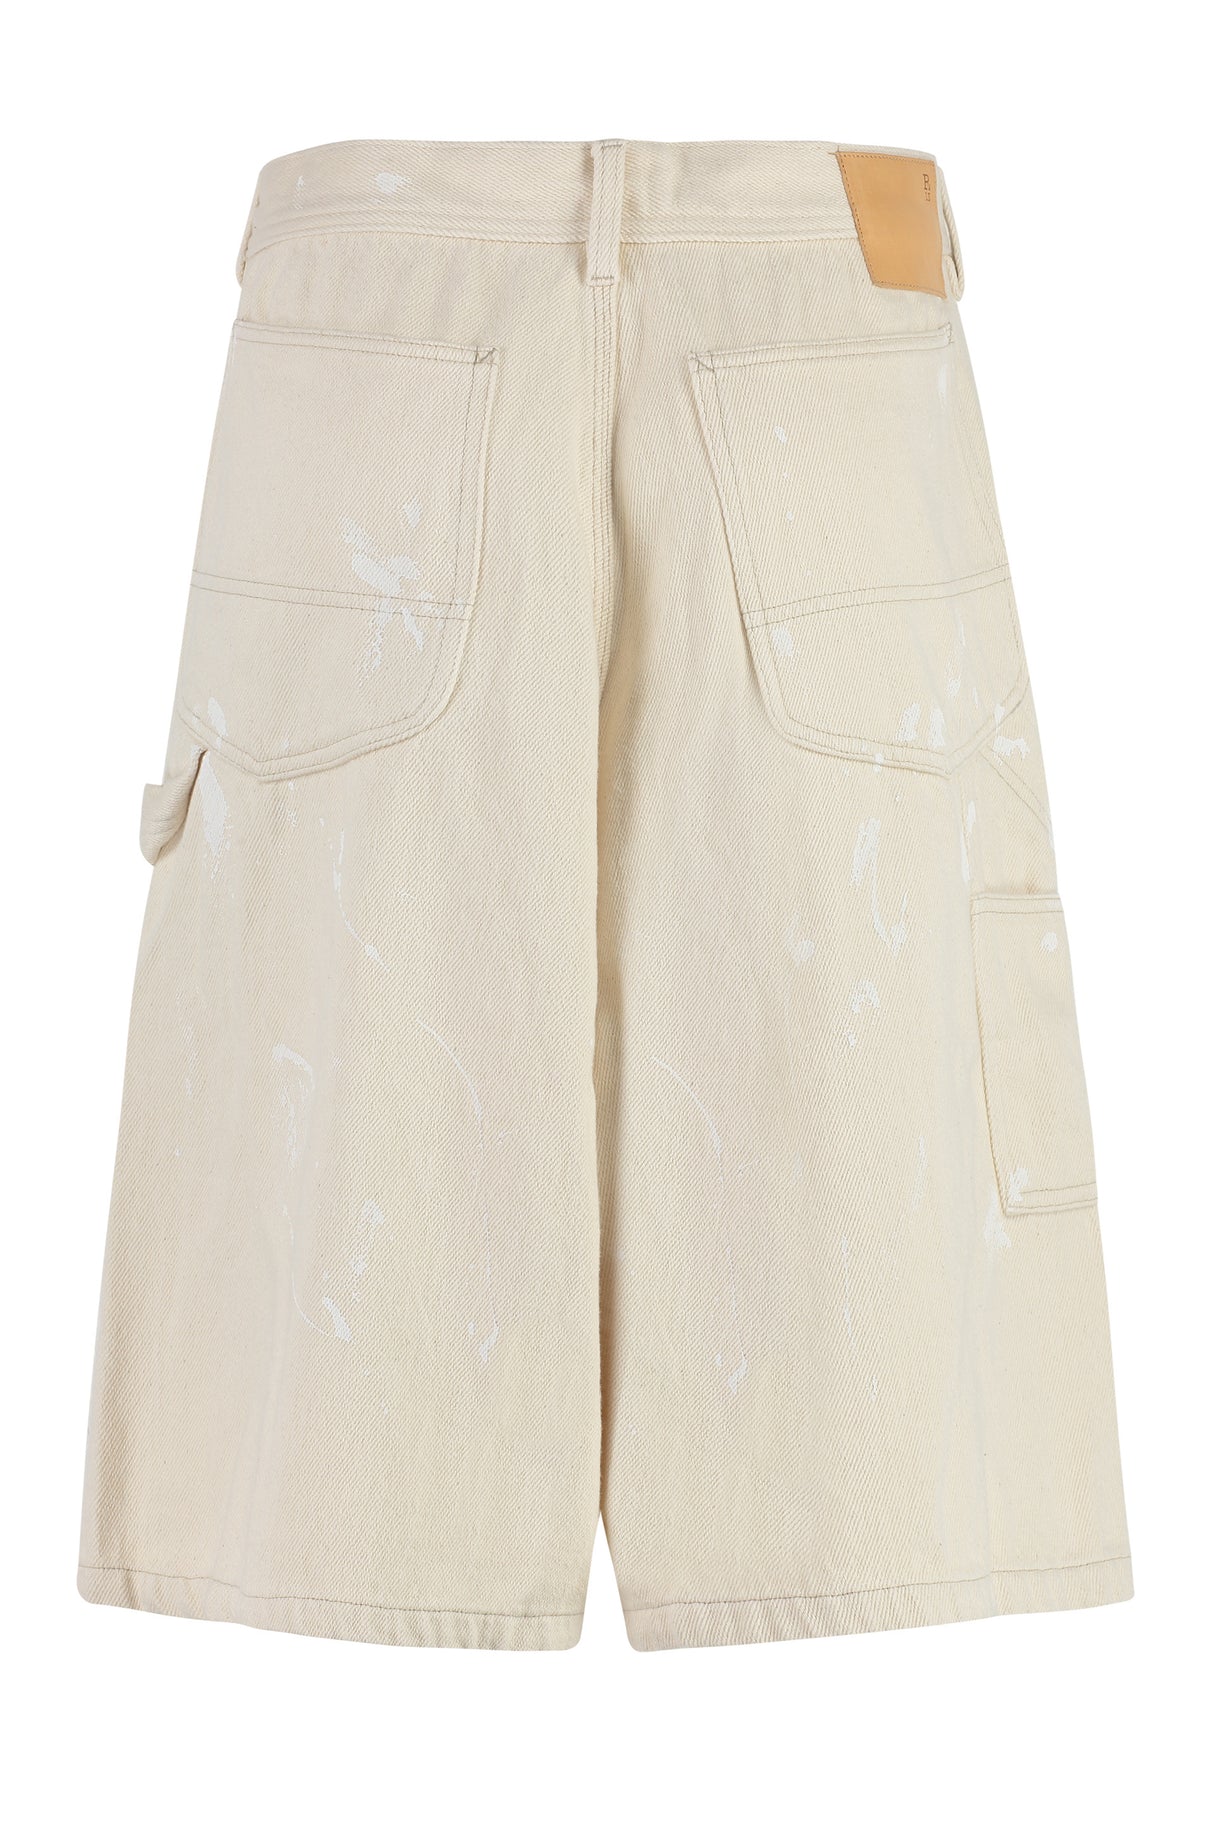 R13 Beige Paint Splatter Denim Shorts for Women - FW23